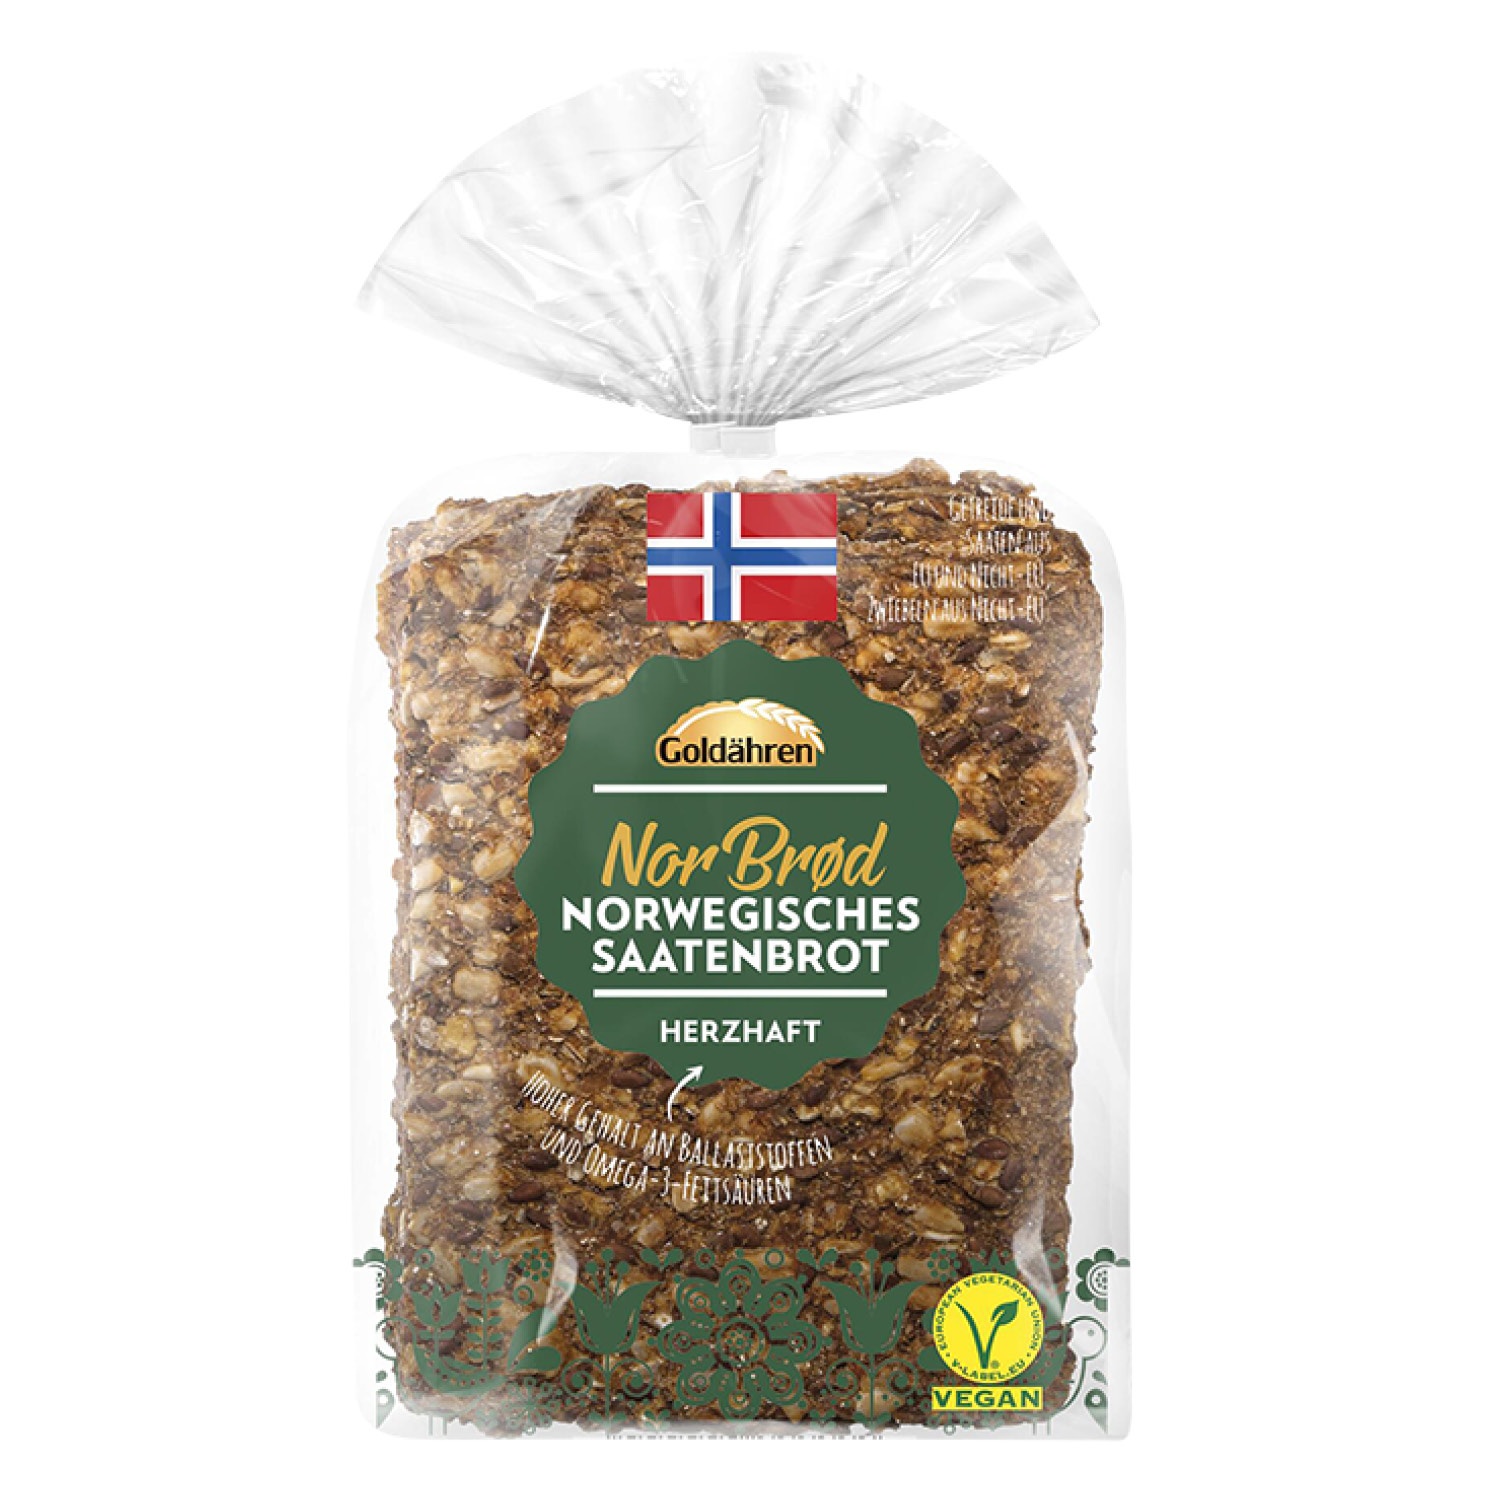 Goldähren Norwegisches Saatenbrot 190 g